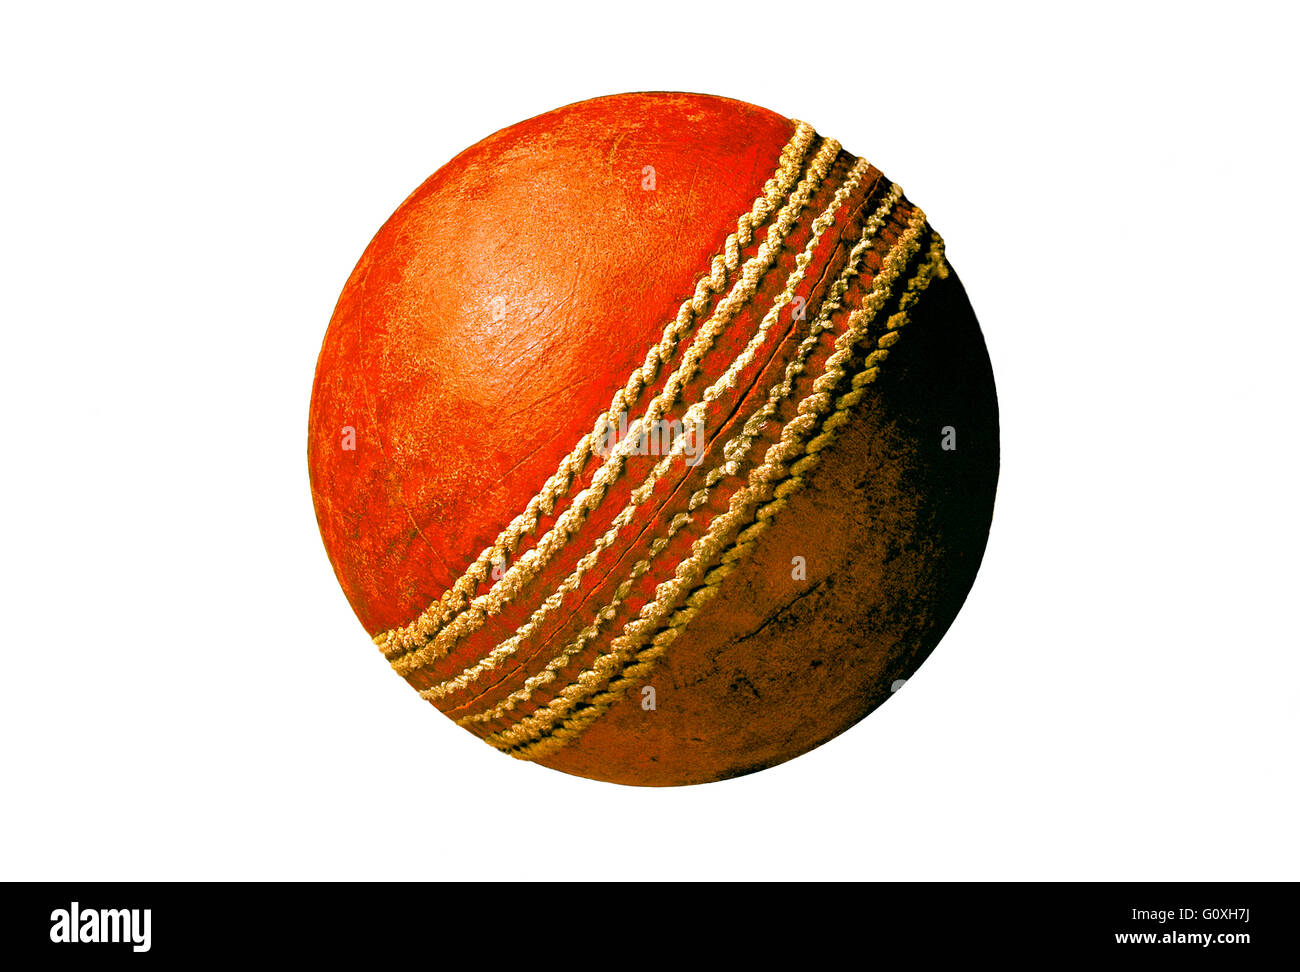 Sfera di Cricket in pelle rossa e vecchio usato cricket ball Foto Stock